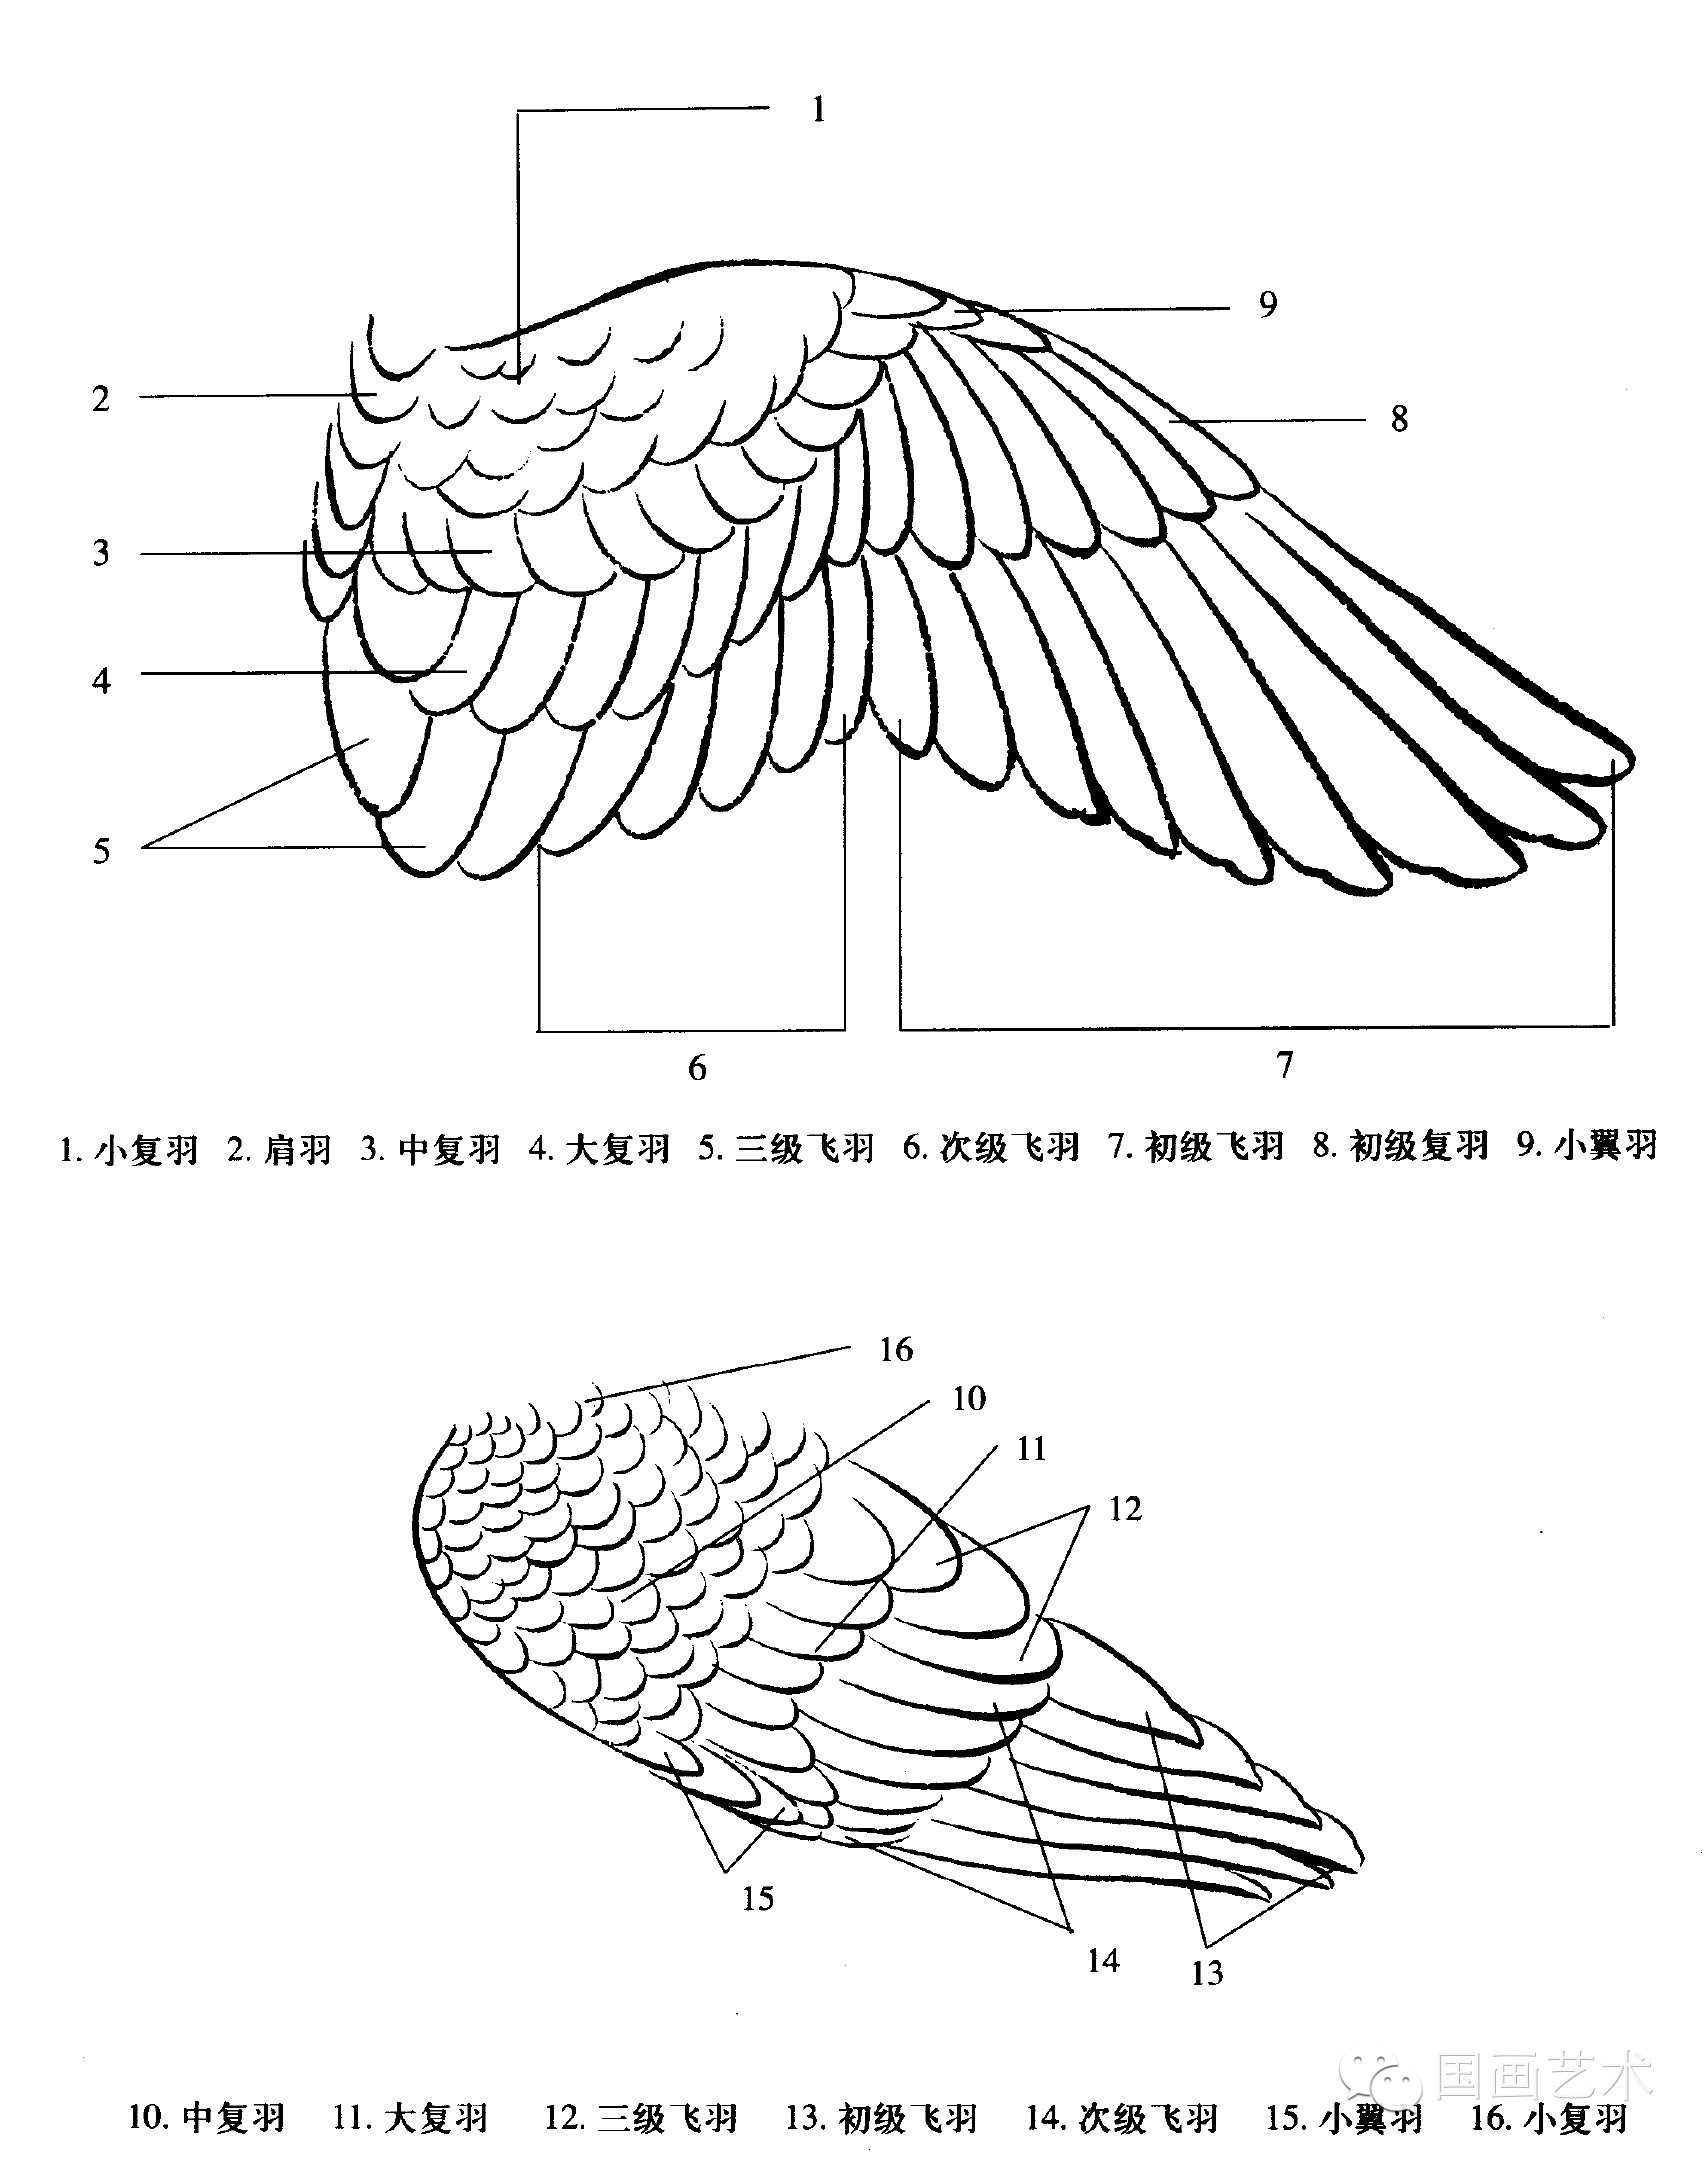 羽翅结构